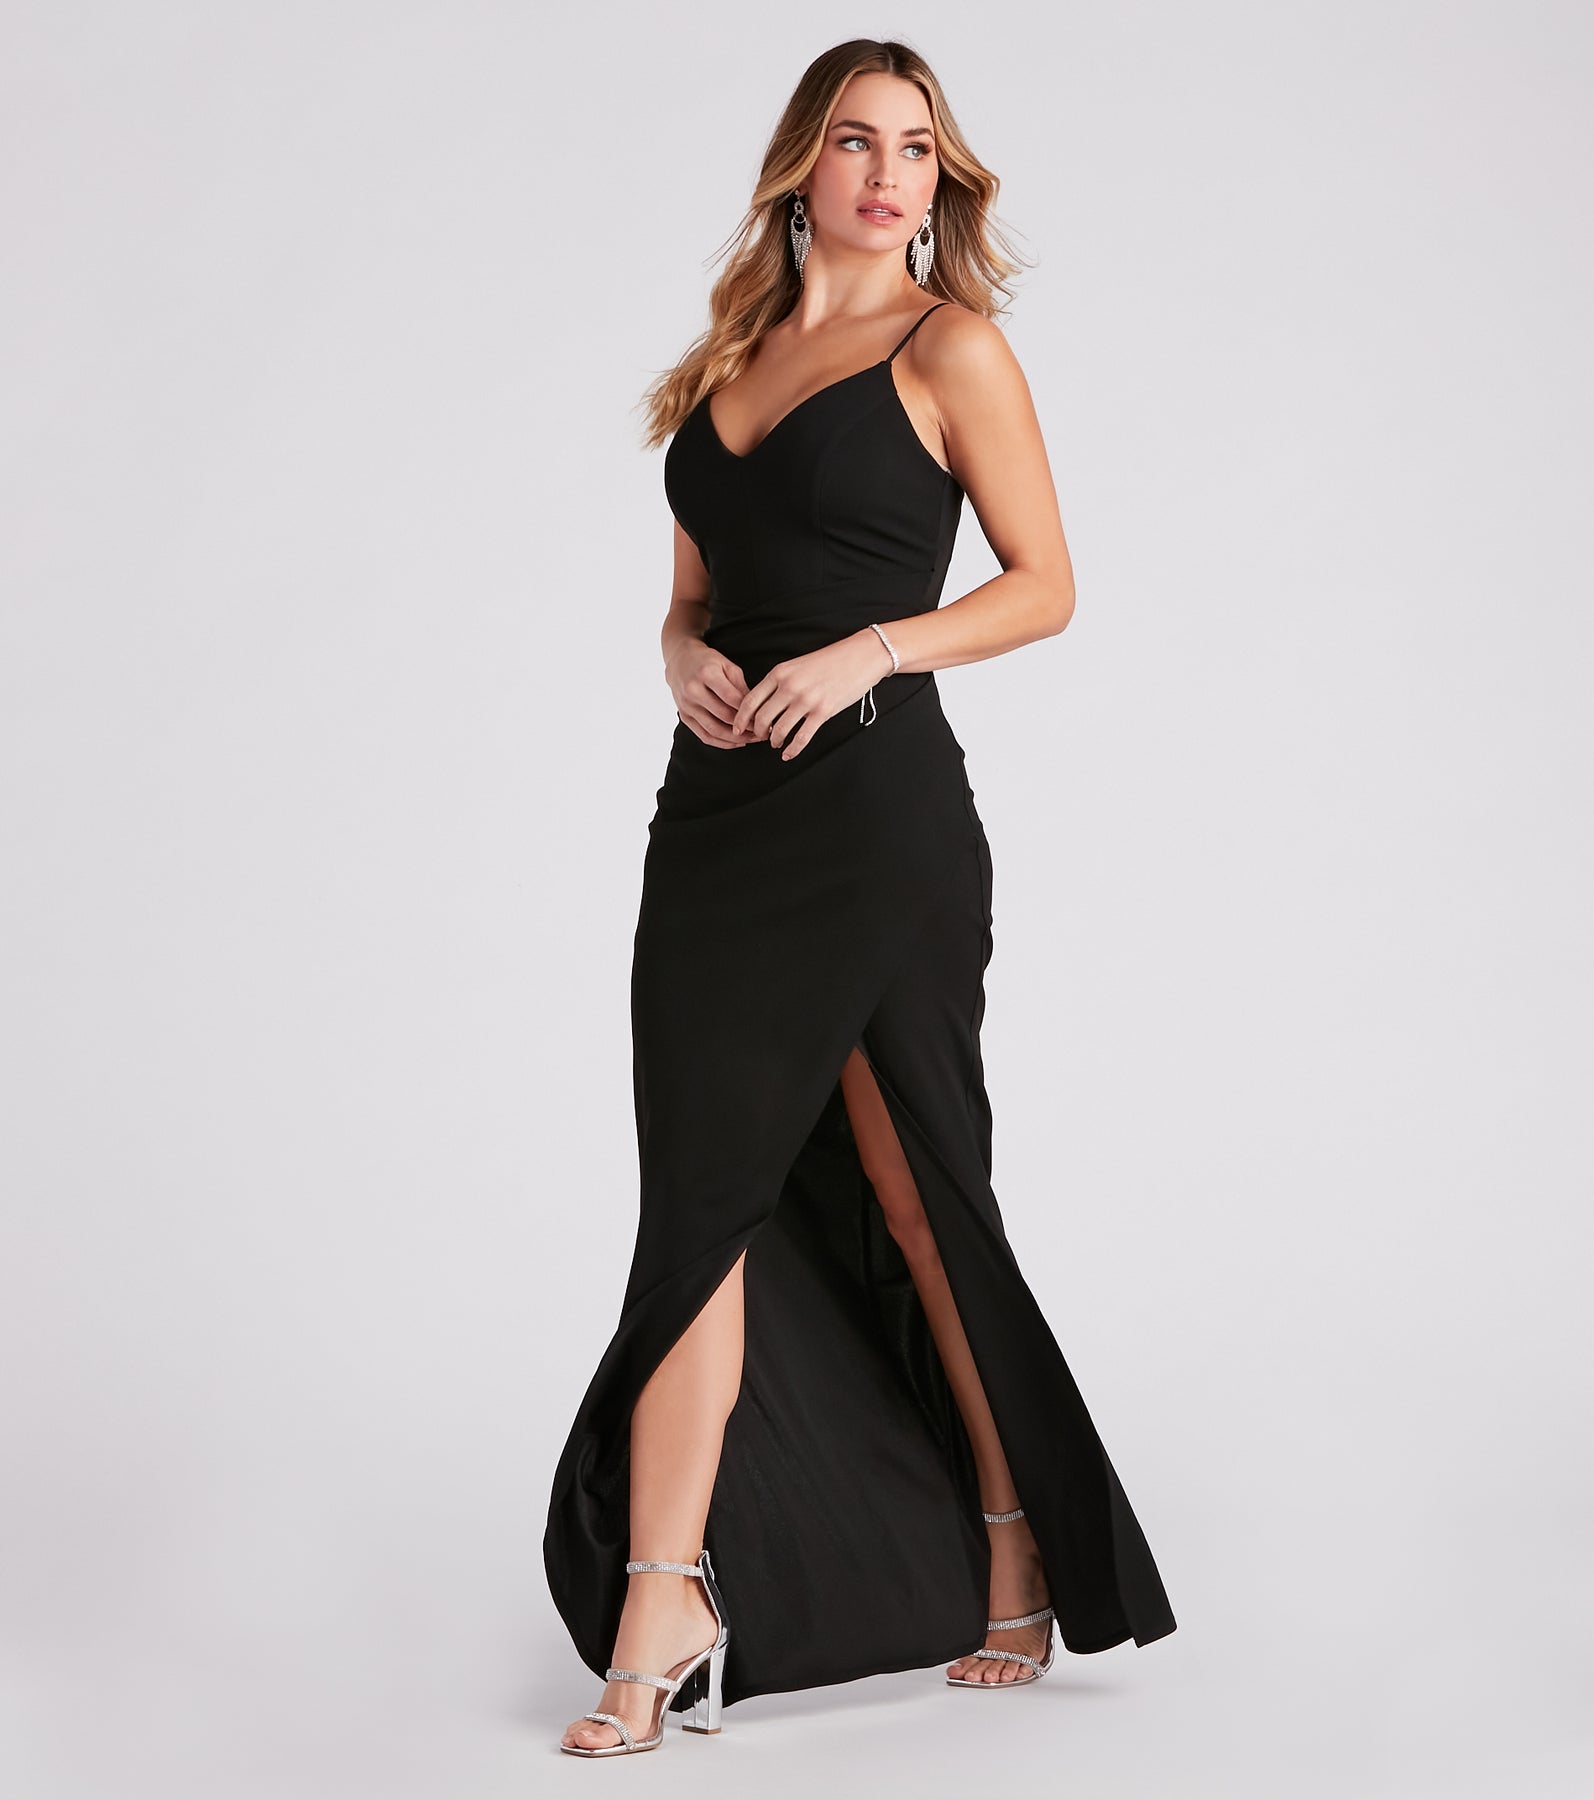 Skyler Formal A-Line Crepe Dress & Windsor